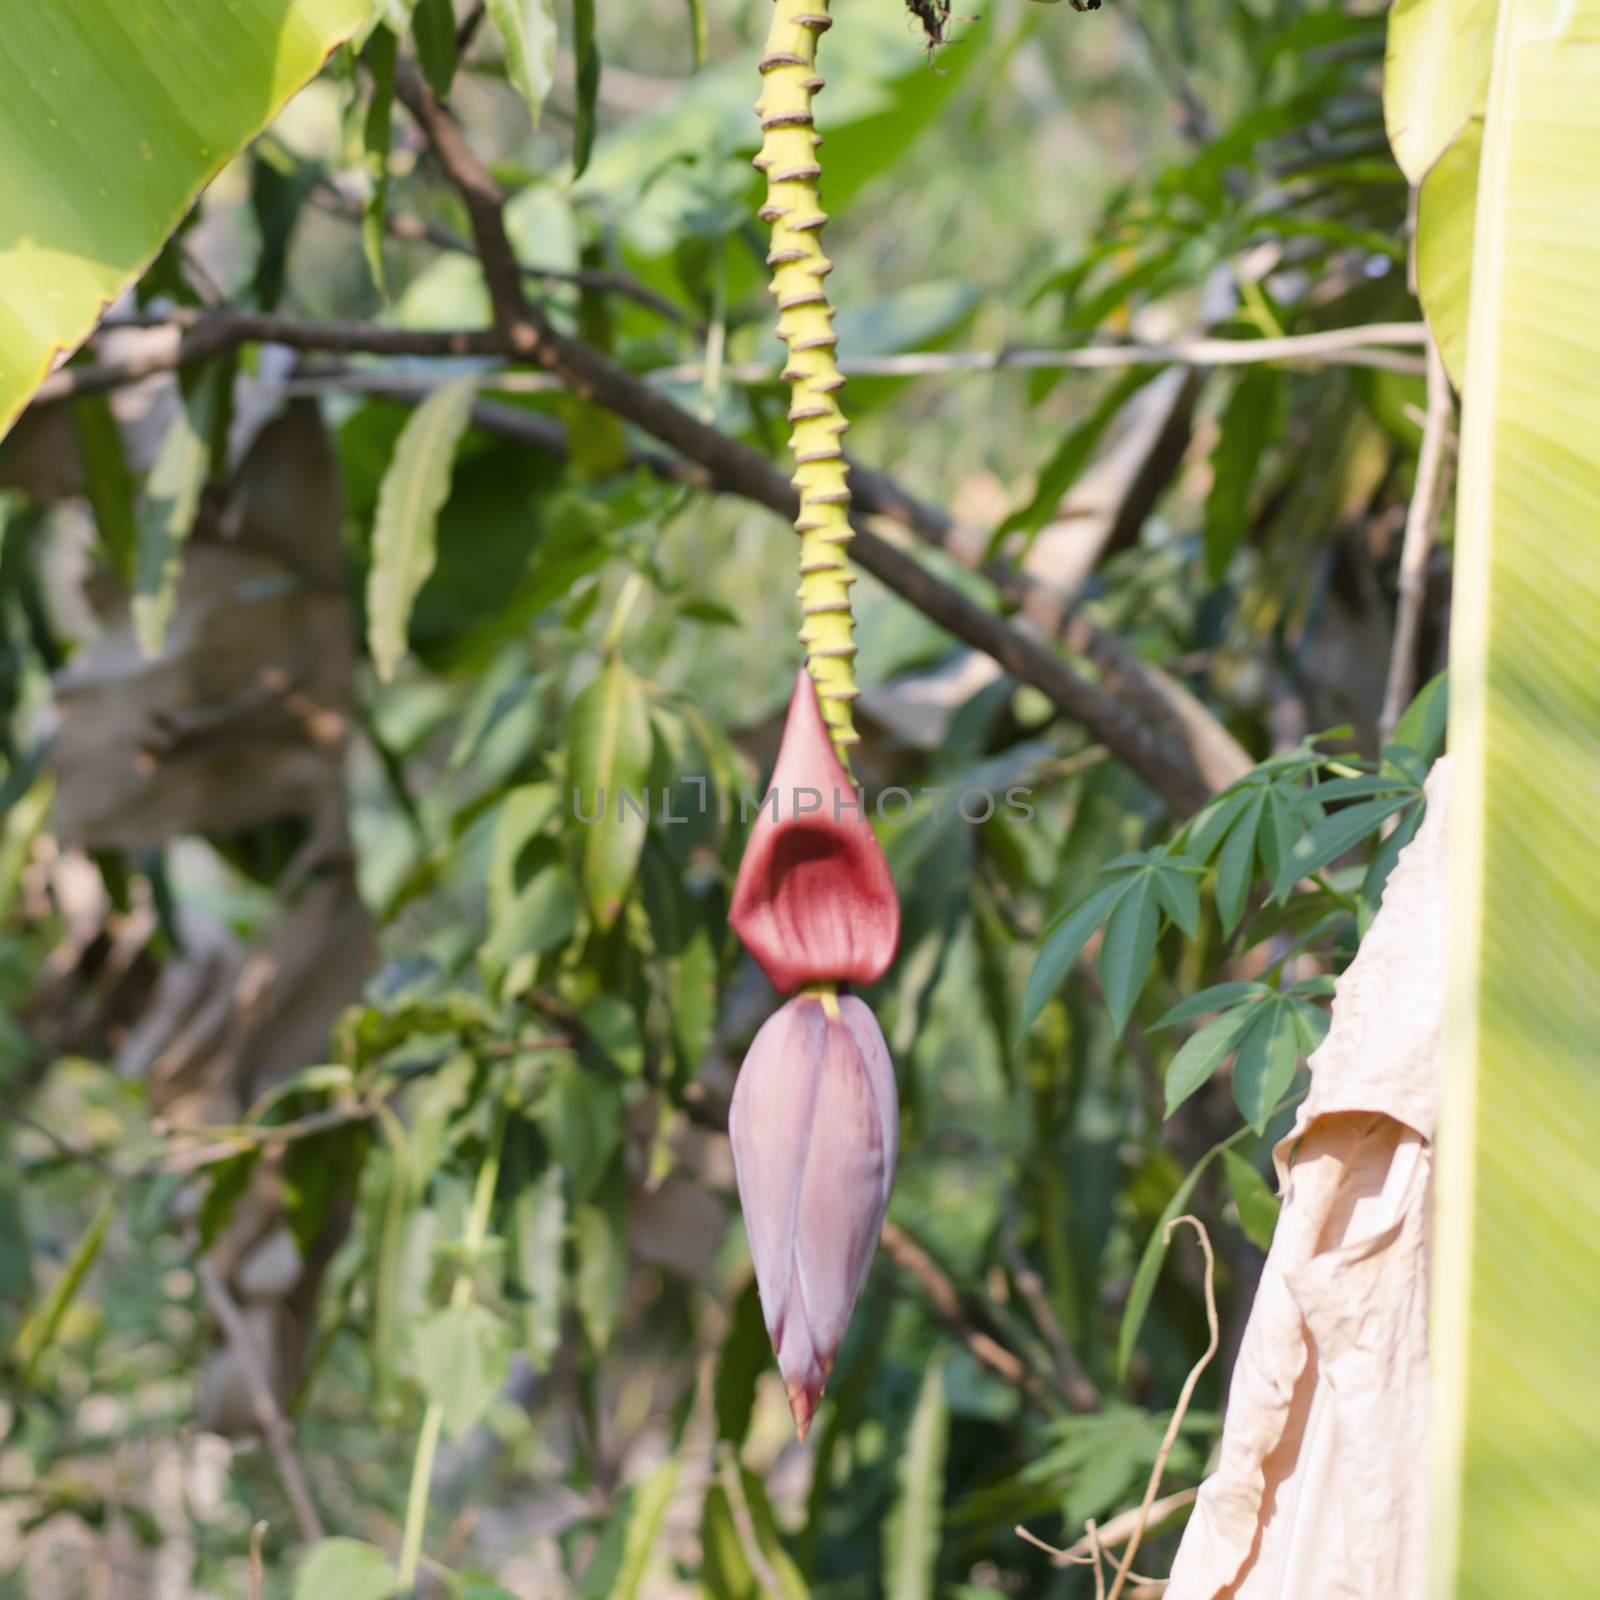 Banana Bud on banana tree by ammza12